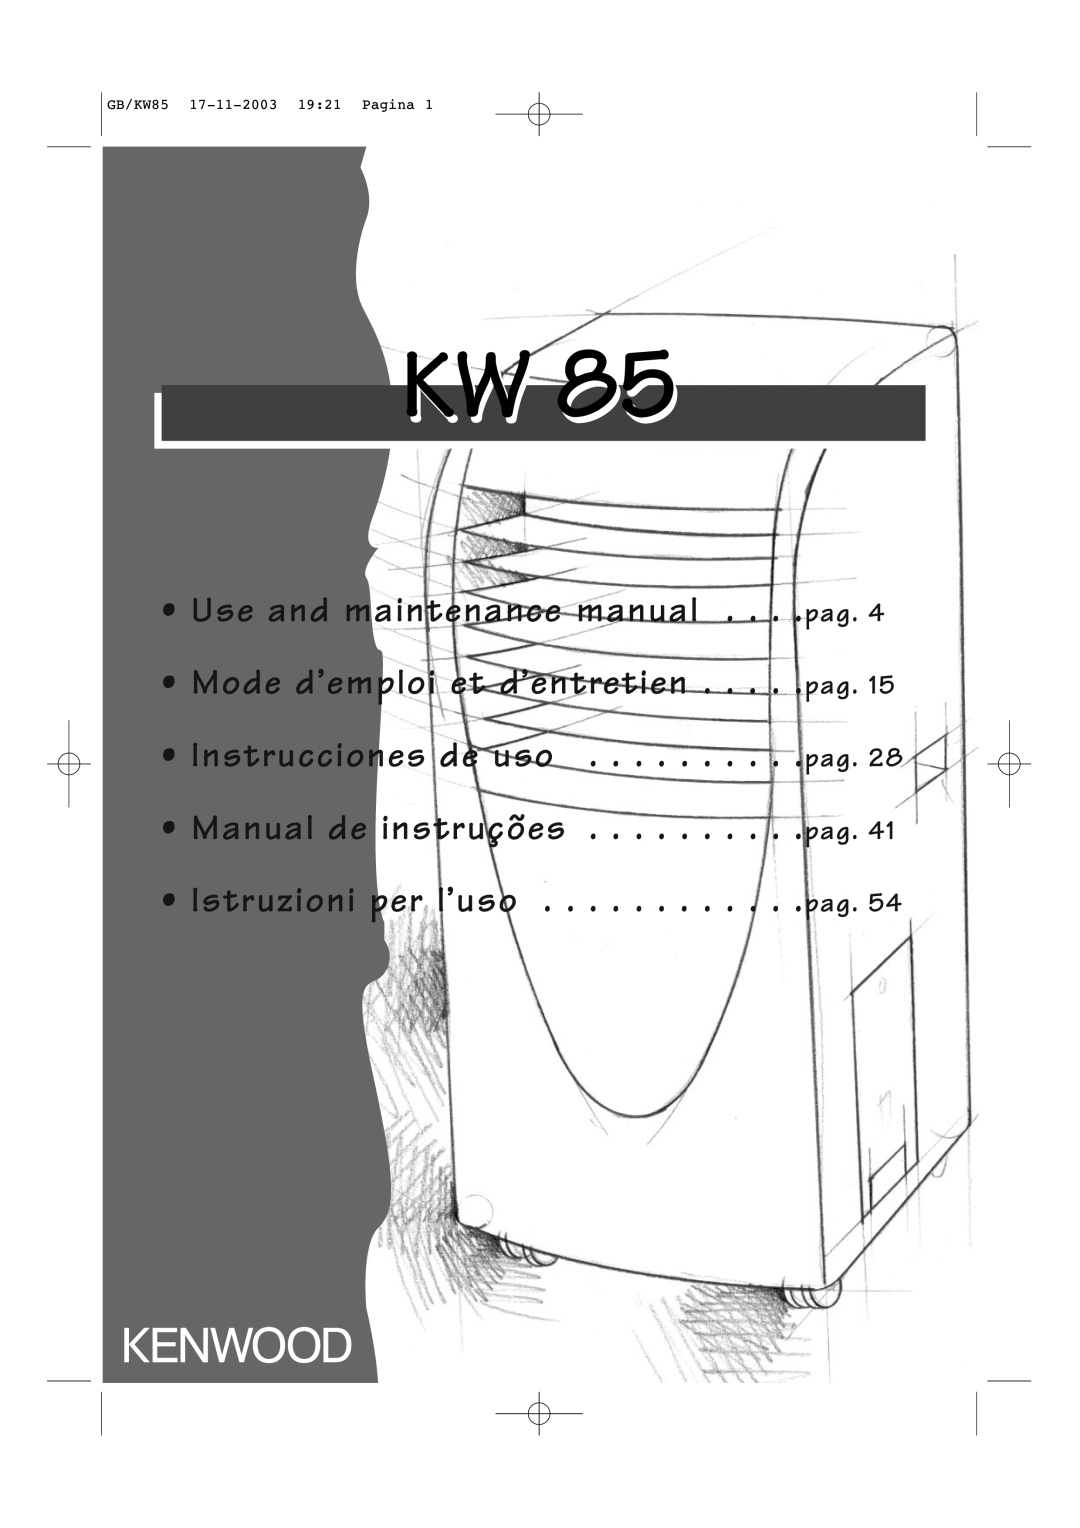 Kenwood KW85 manual Instrucciones de uso Manual de instruções, Istruzioni per l’uso, Use and maintenance manual 